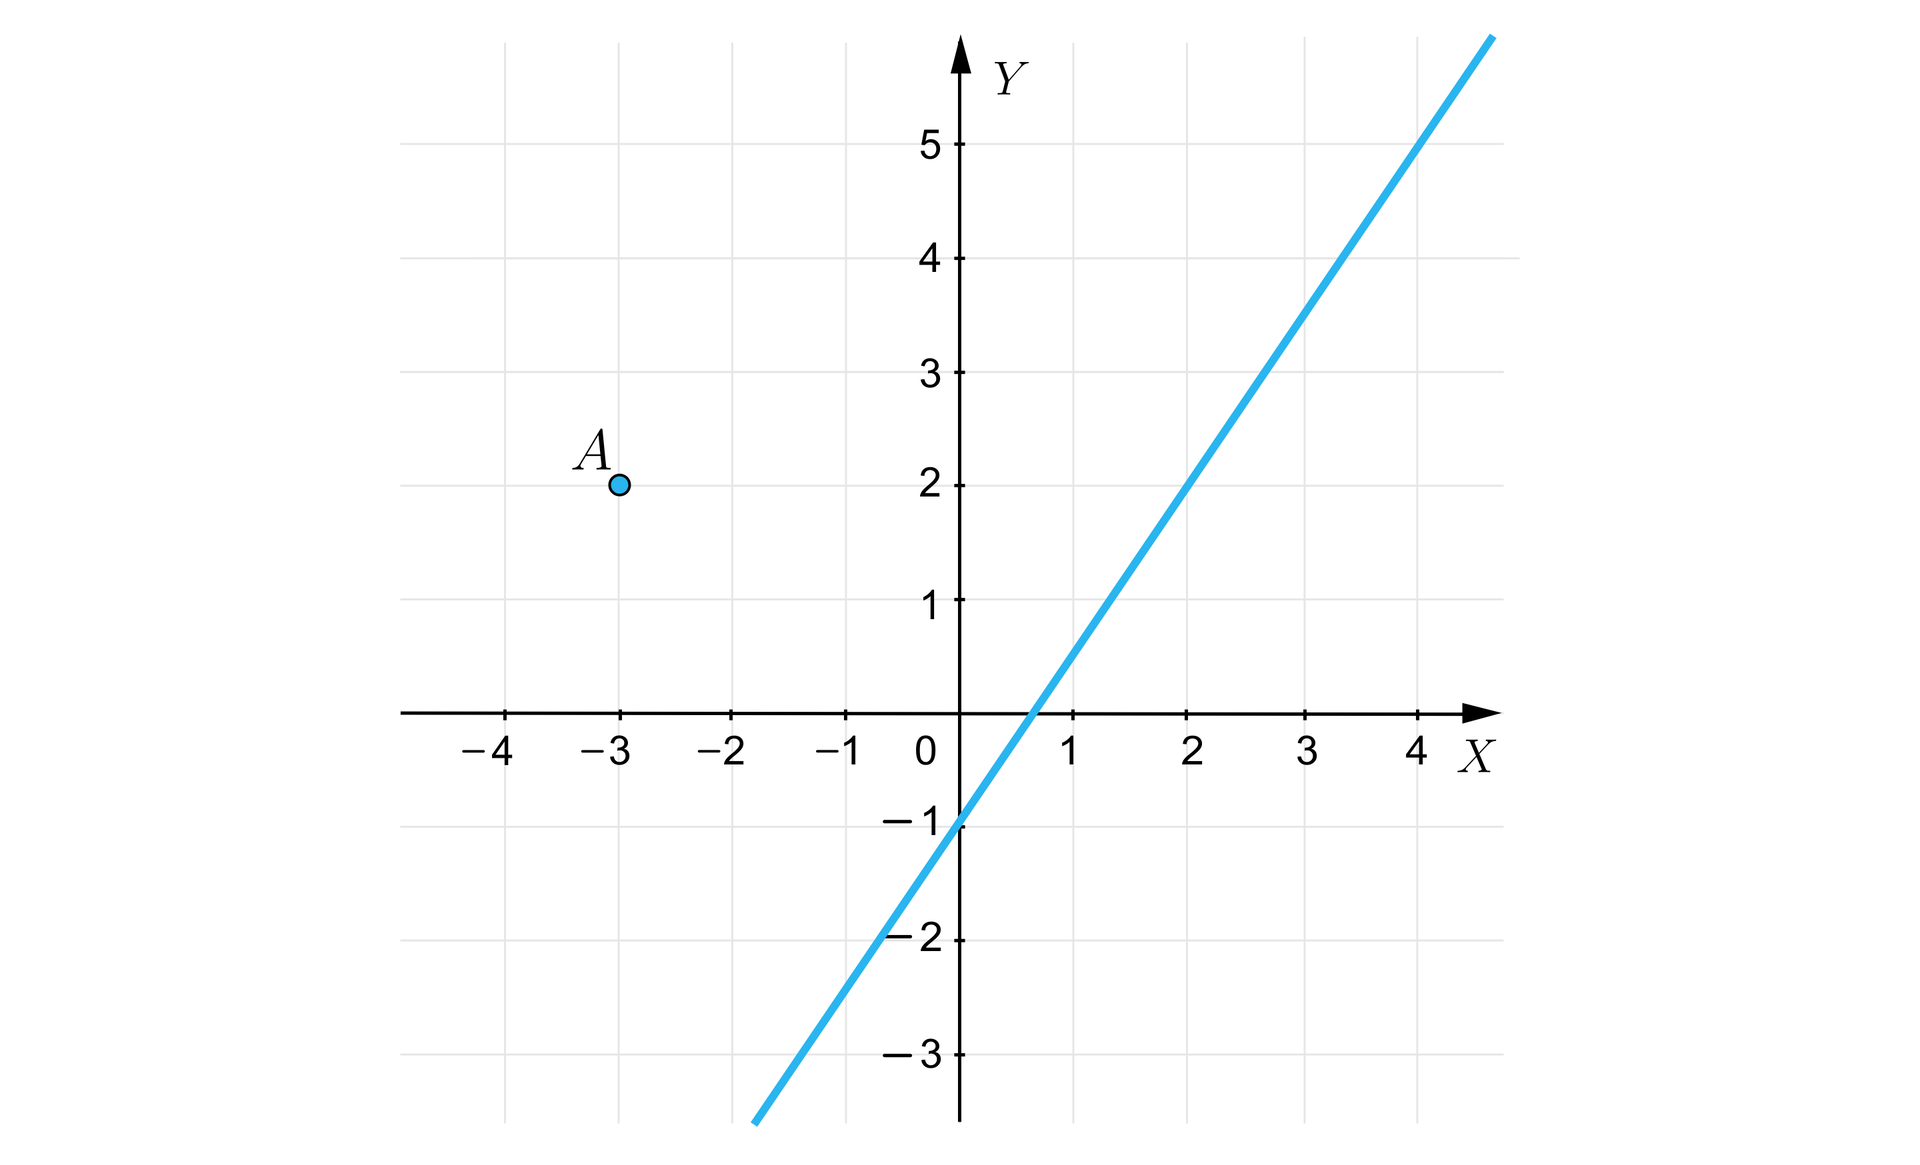 Rysunek przedstawia układ współrzędnych z poziomą osią X od minus czterech do czterech oraz z pionową osią  Y od minus trzech do pięciu. Na płaszczyźnie narysowano ukośną prostą przechodzącą przez punkty o współrzędnych:  0;-1 oraz 2;2.  Na płaszczyźnie zaznaczono również punkt A=-3;2.